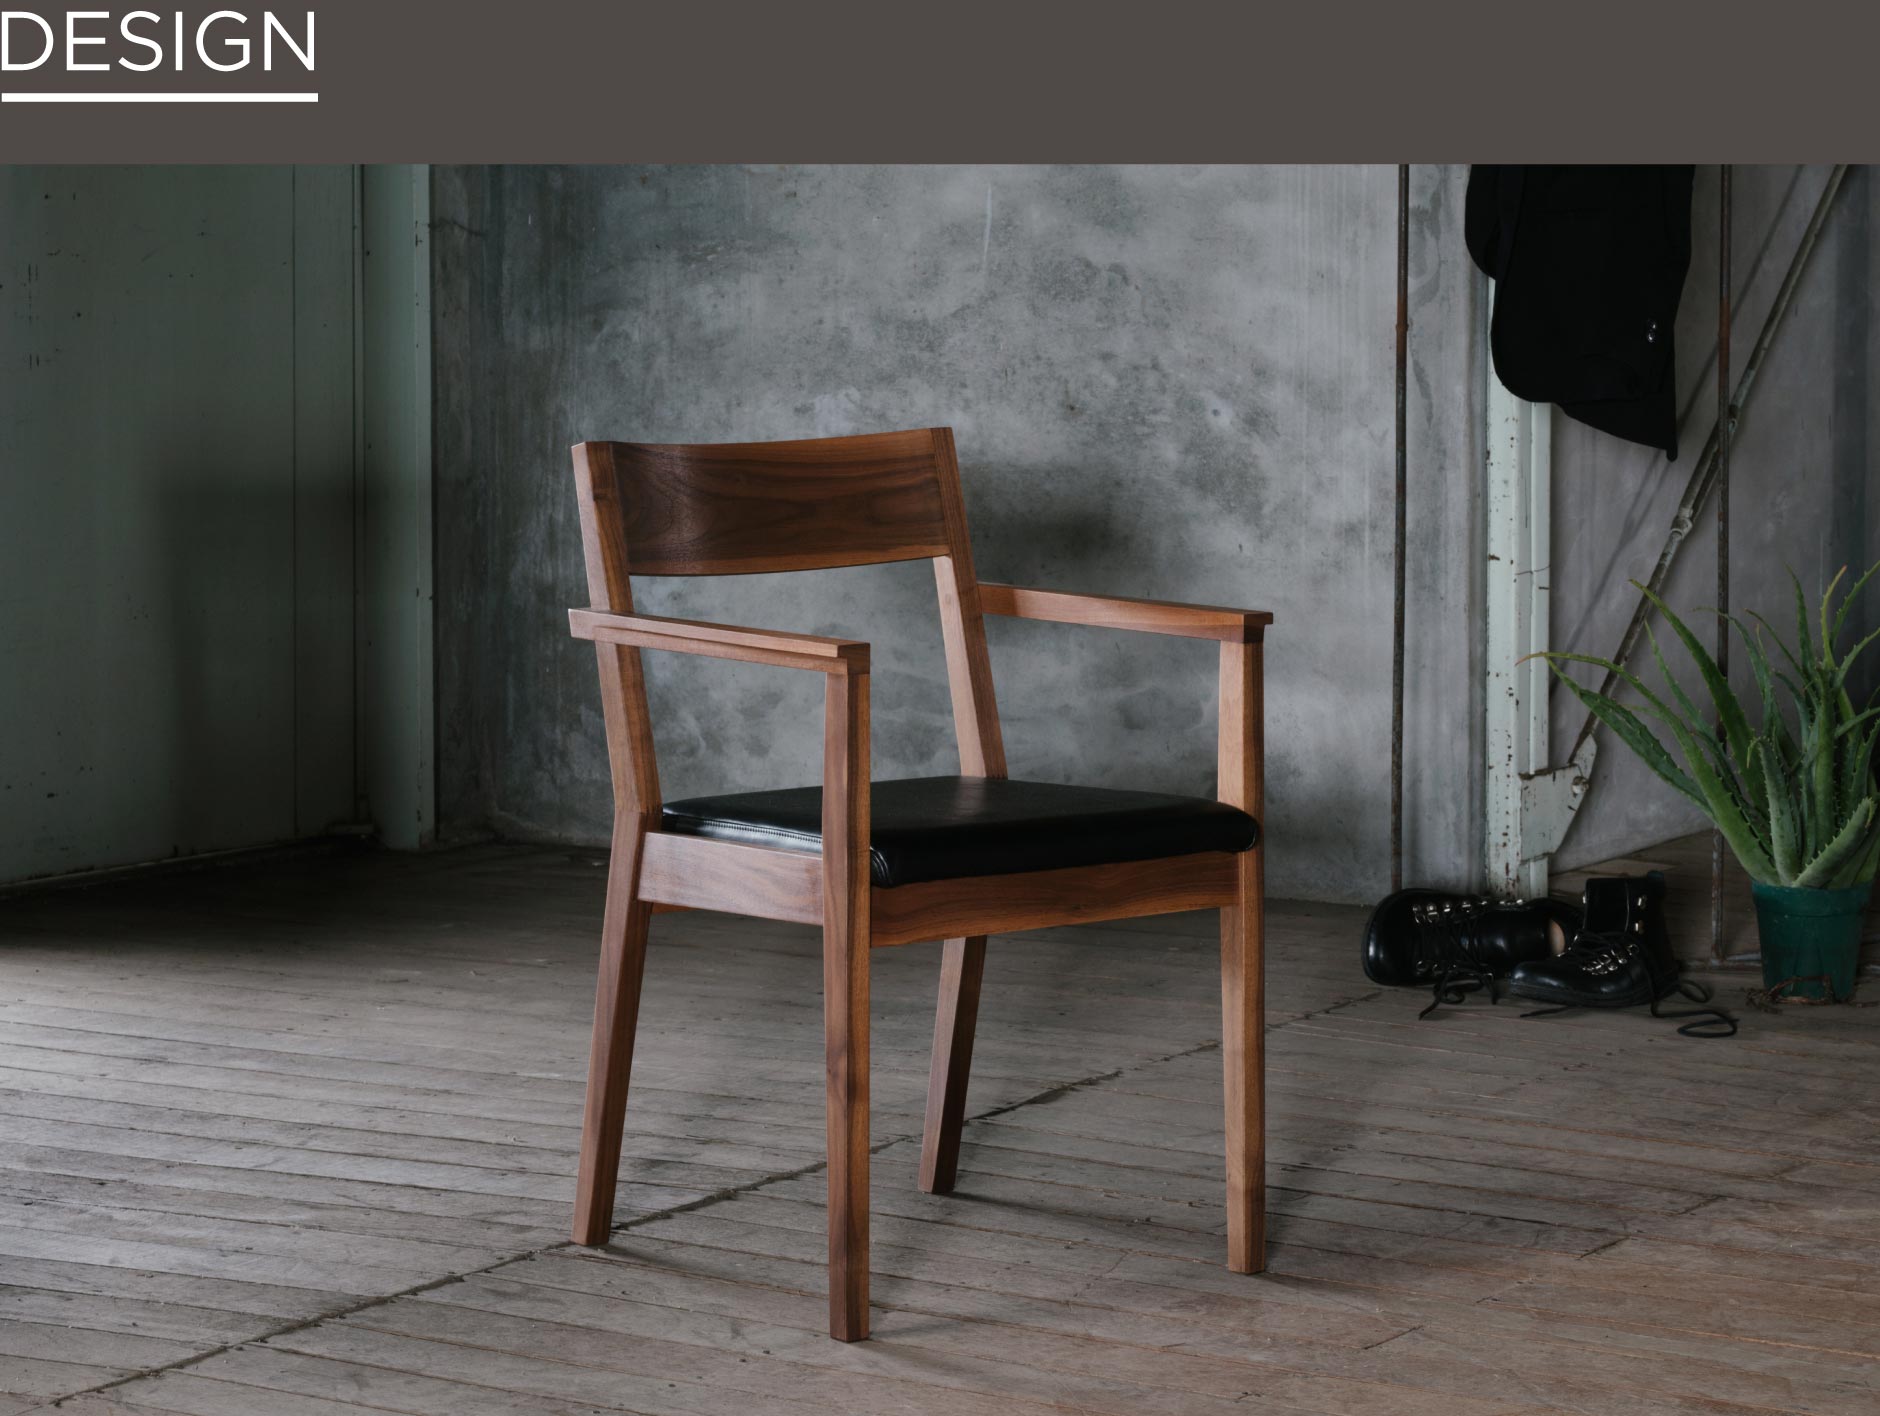 日常にとけこむデザイン。大阪SOLIDの家具を代表するチェア。前脚に繋がるフルアームはすっきりしながらも重厚感を出しています。